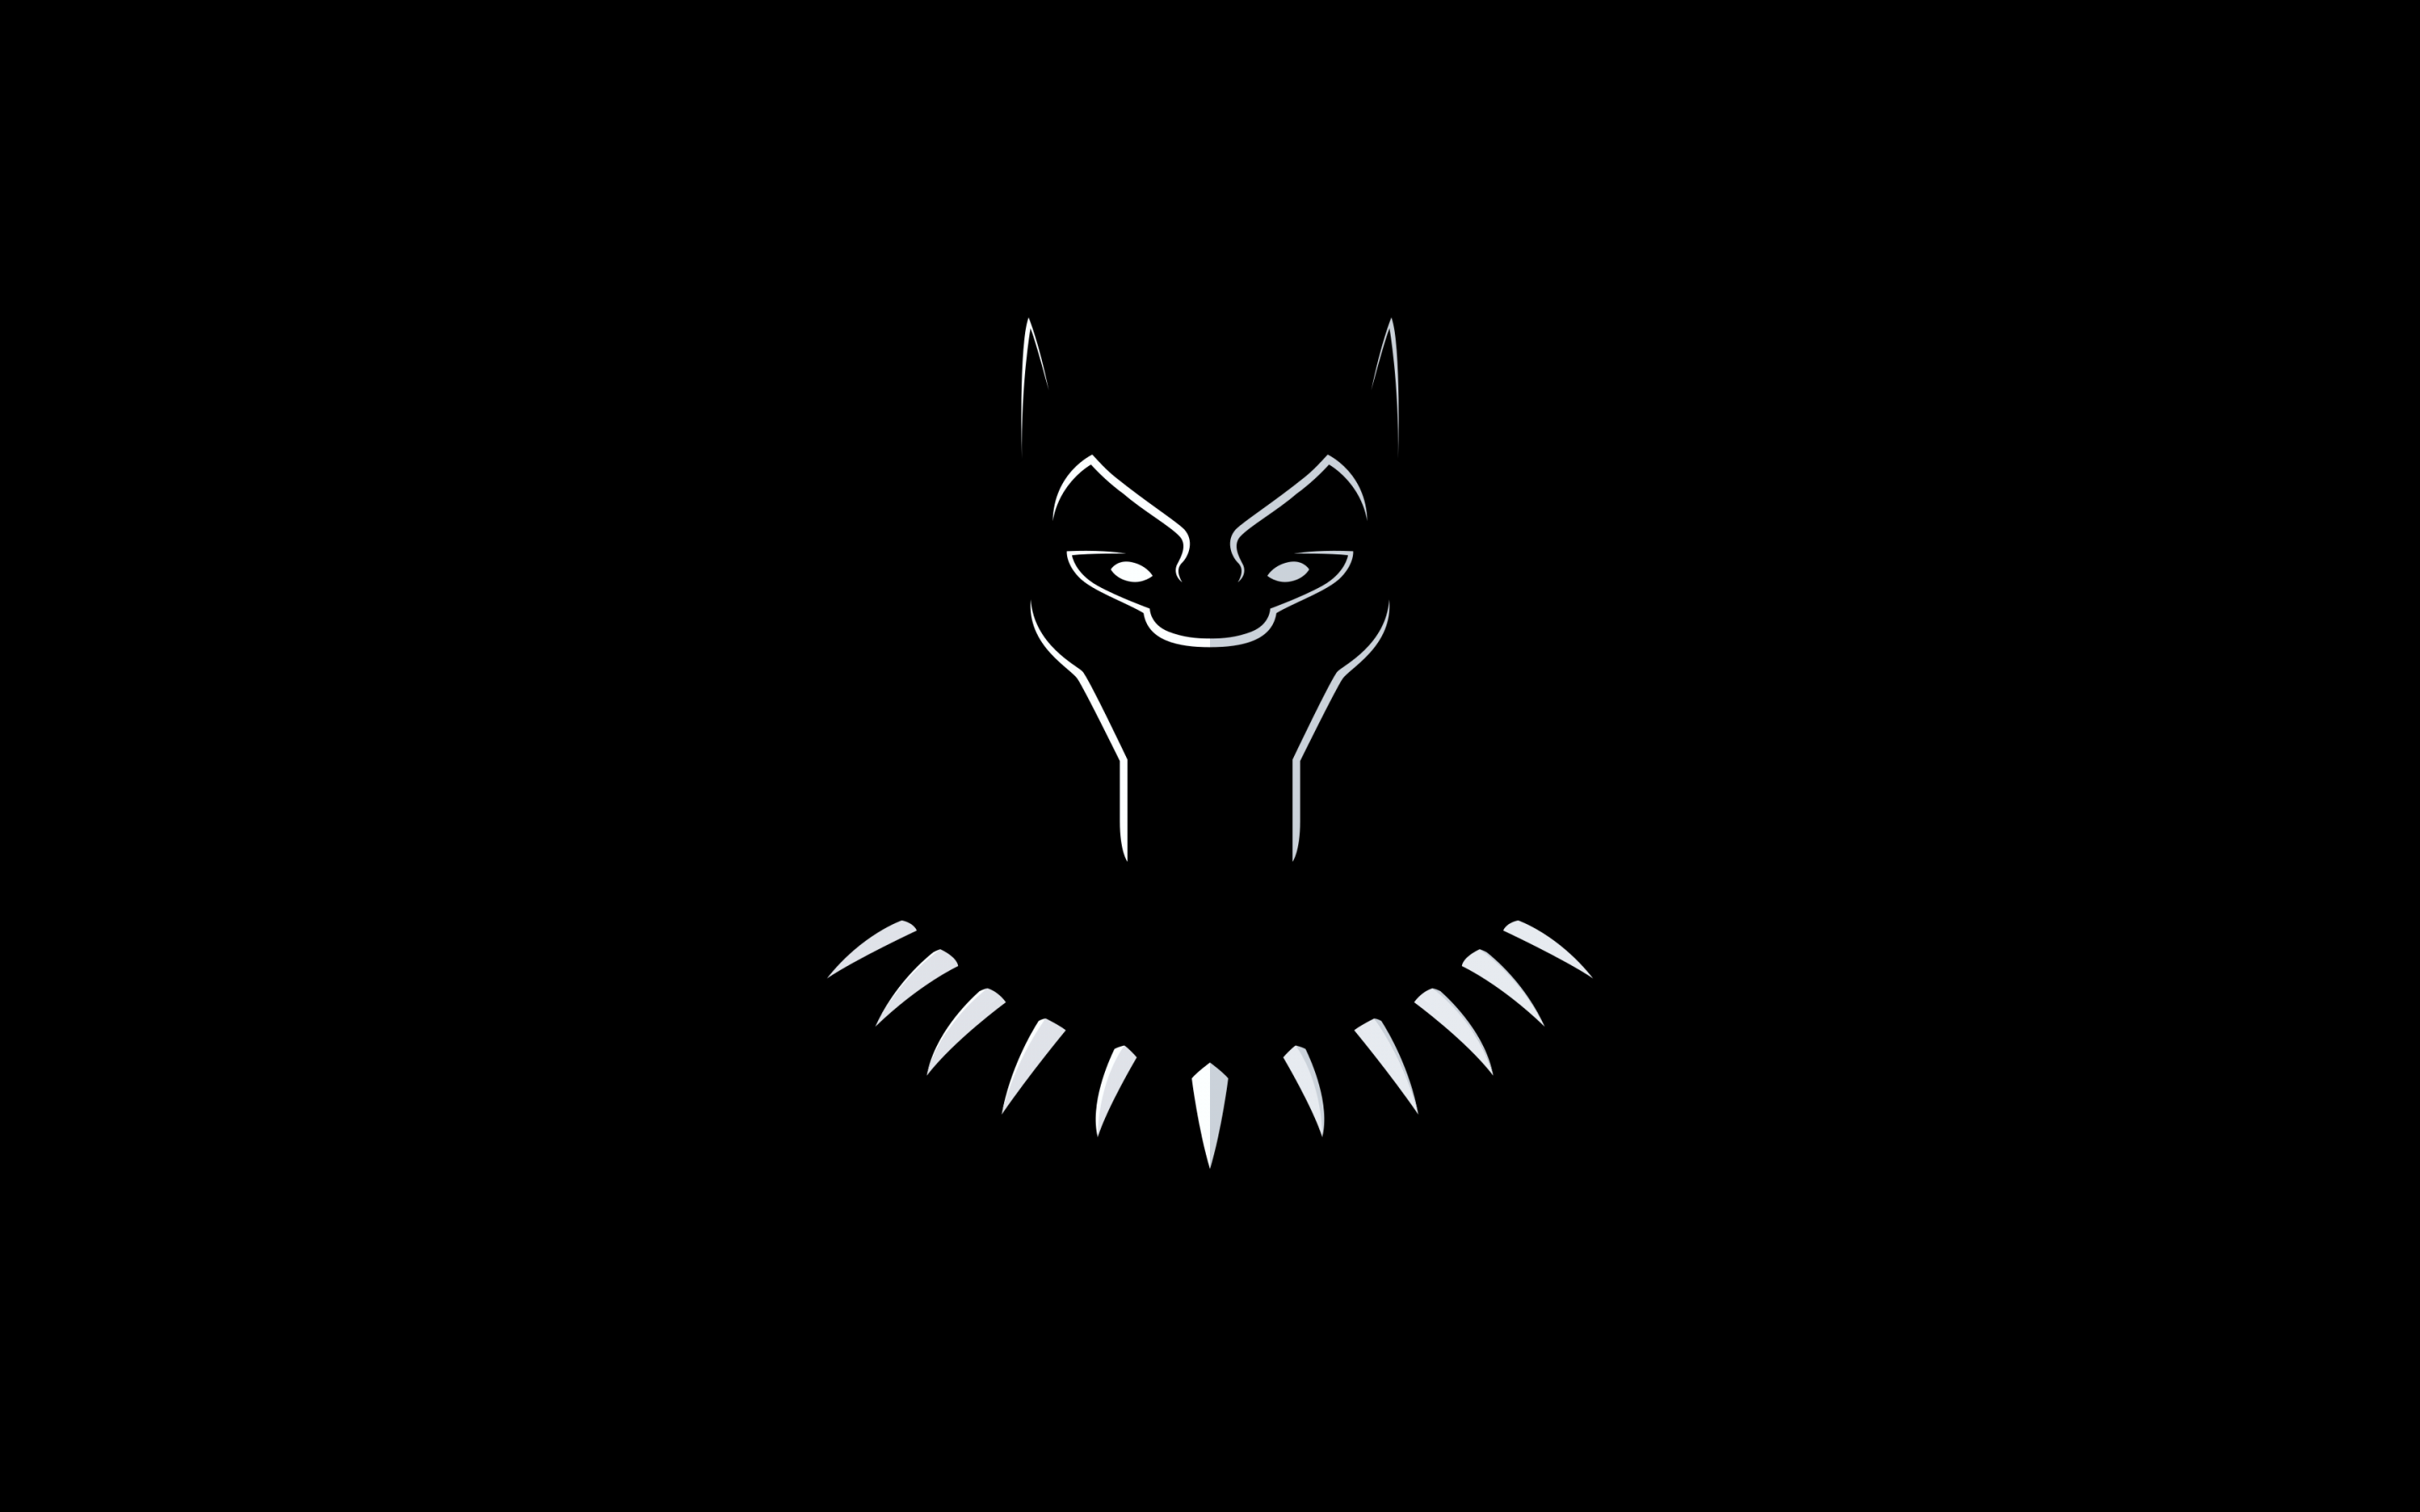 Với độ phân giải 4K sắc nét, hình nền Black Panther sẽ đem đến trải nghiệm đầy ấn tượng cho màn hình của bạn. Với bộ lông đen om trên nền đỏ rực rỡ, hình ảnh Black Panther sẽ thật sự đẹp mắt trên màn hình của bạn.